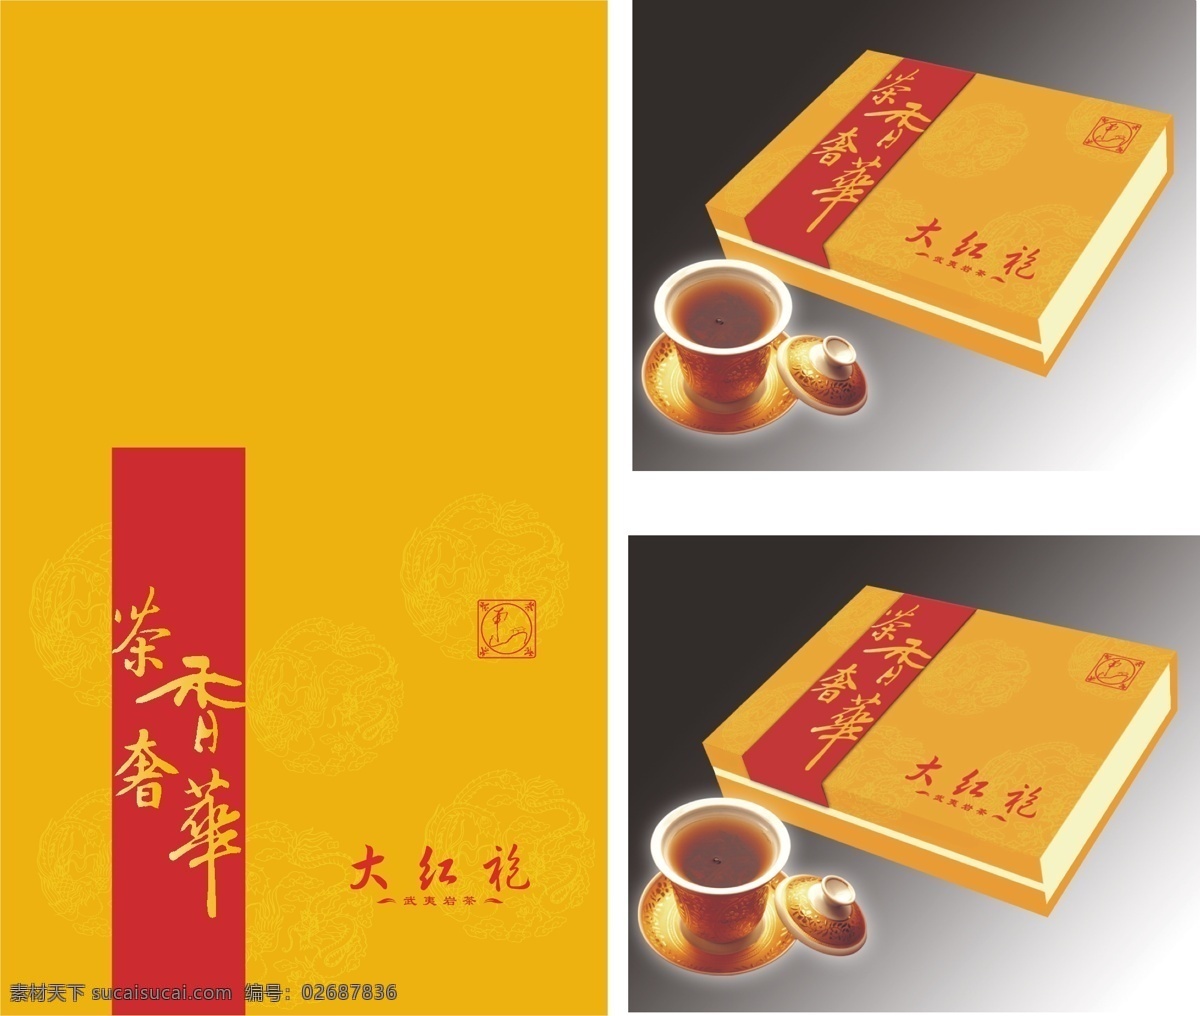 茶香 奢华 包装设计 茶叶包装 大红袍 礼盒设计 矢量 模板下载 茶香奢华 高档茶礼盒